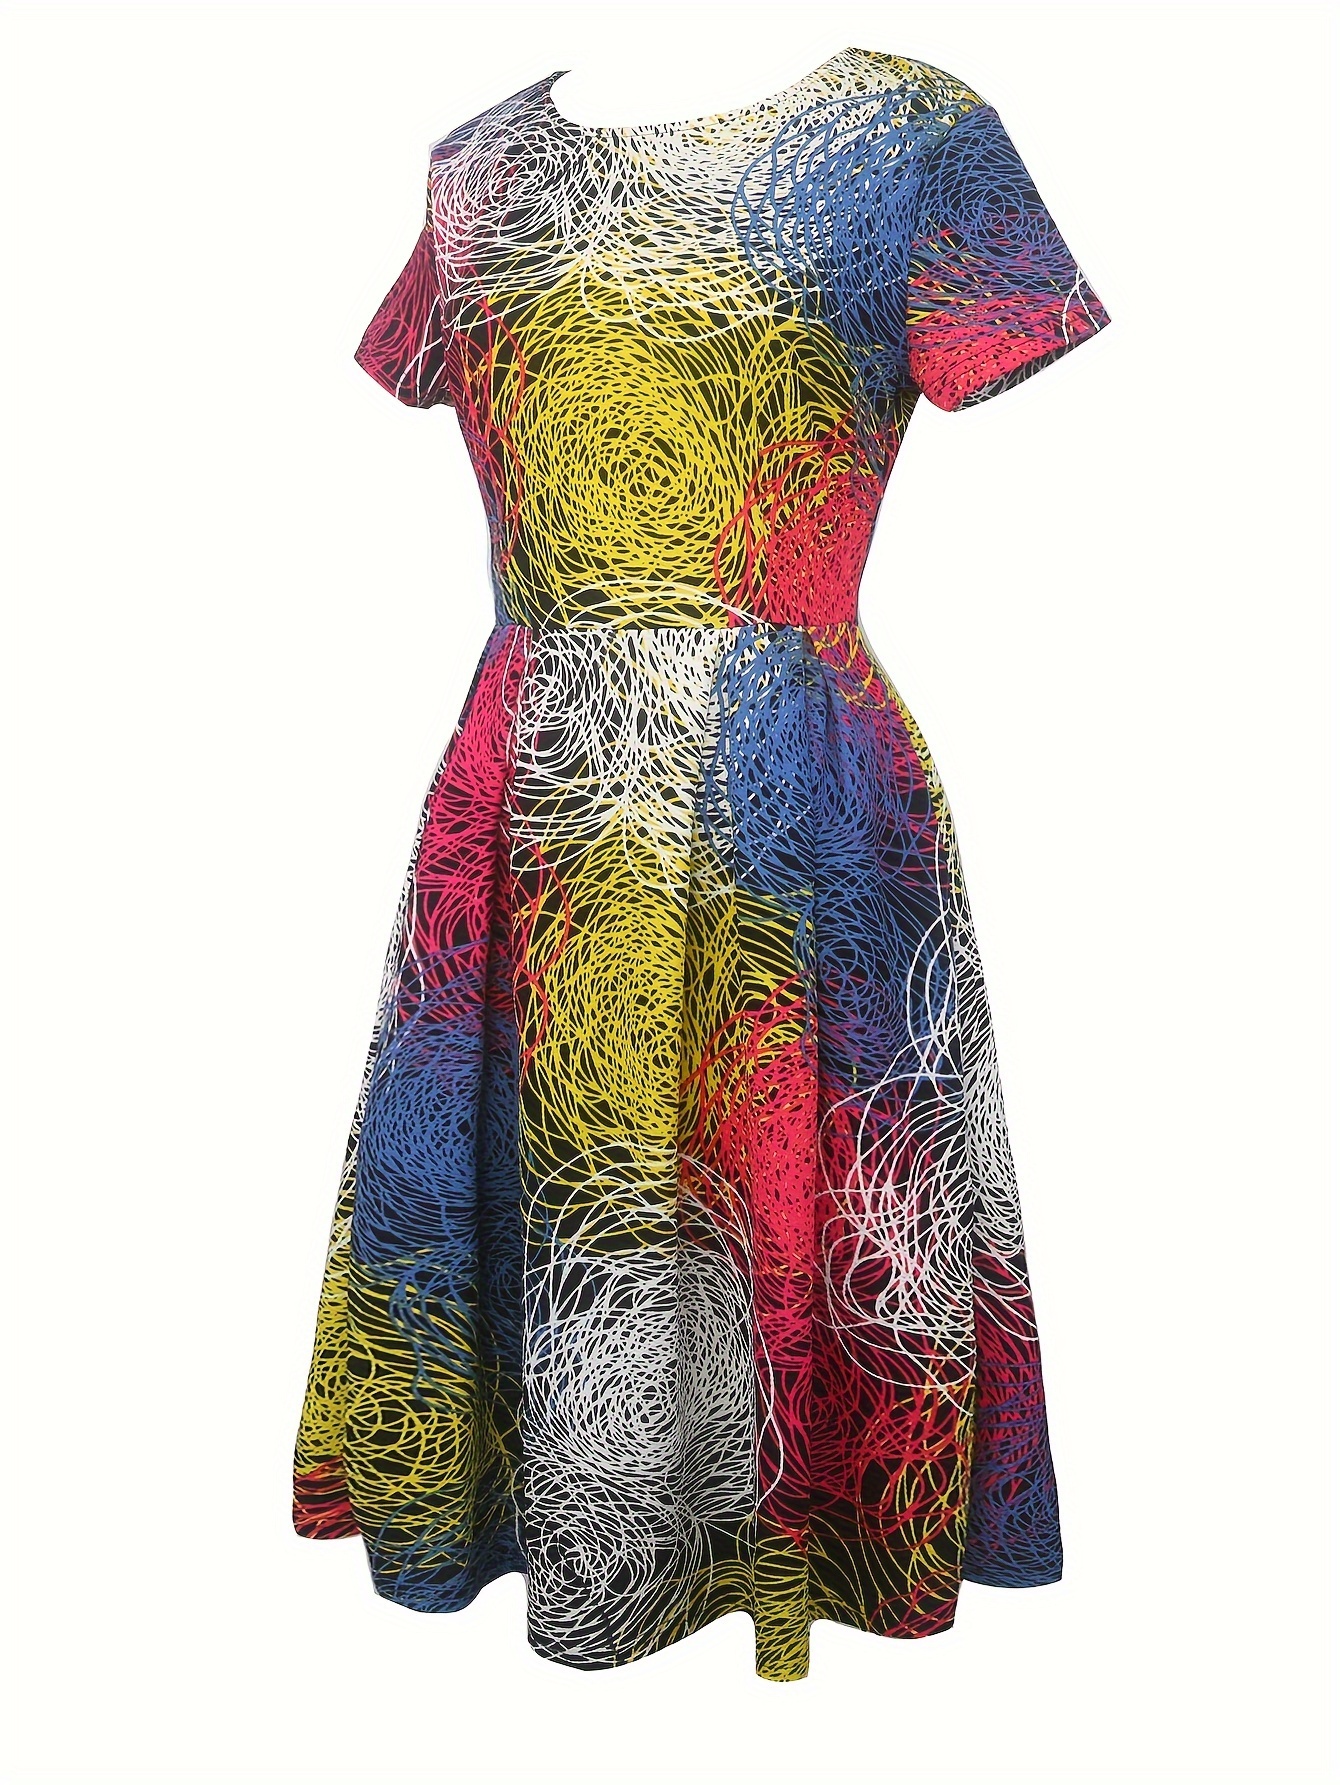 Soyut Baskı Aline Salıncak Elbise, İlkbahar ve Yaz İçin Vintage Kısa Kollu Elbise, Kadın Giyim